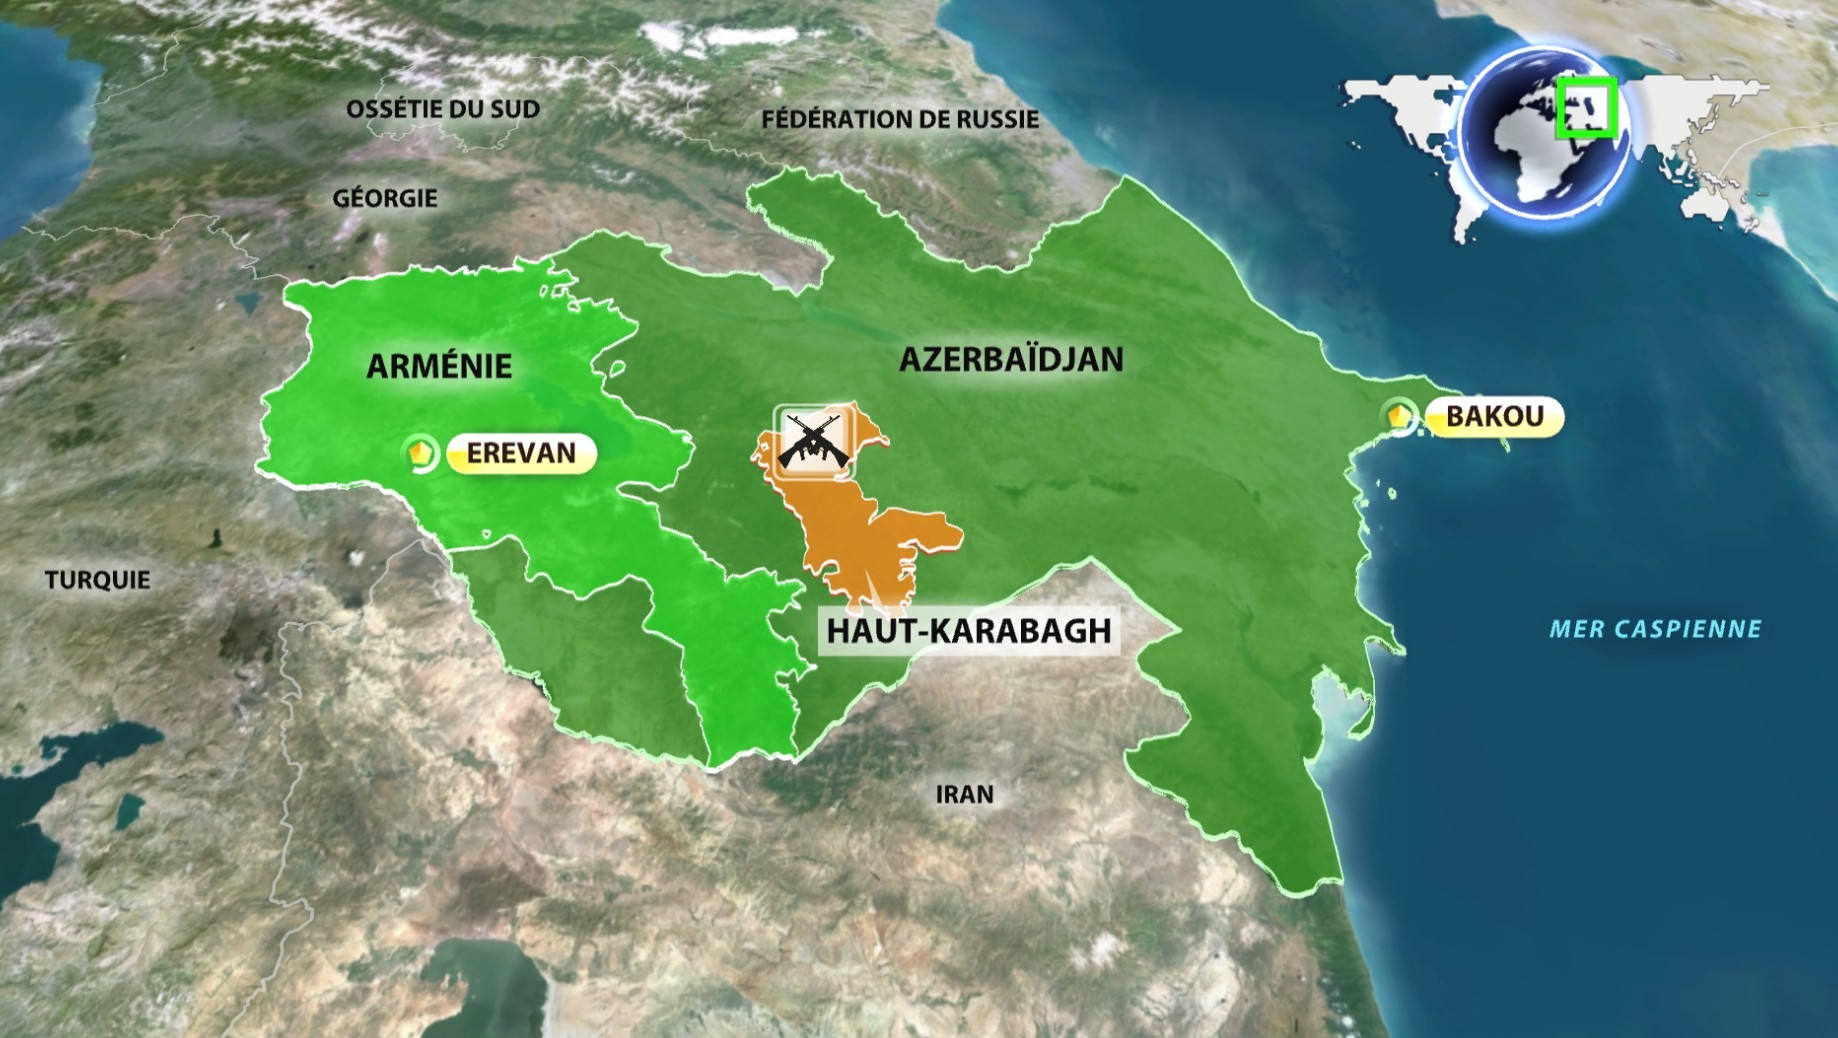  Arménie vs Azerbaïdjan : tout savoir sur le conflit éclaté dans le Haut-Karabagh 